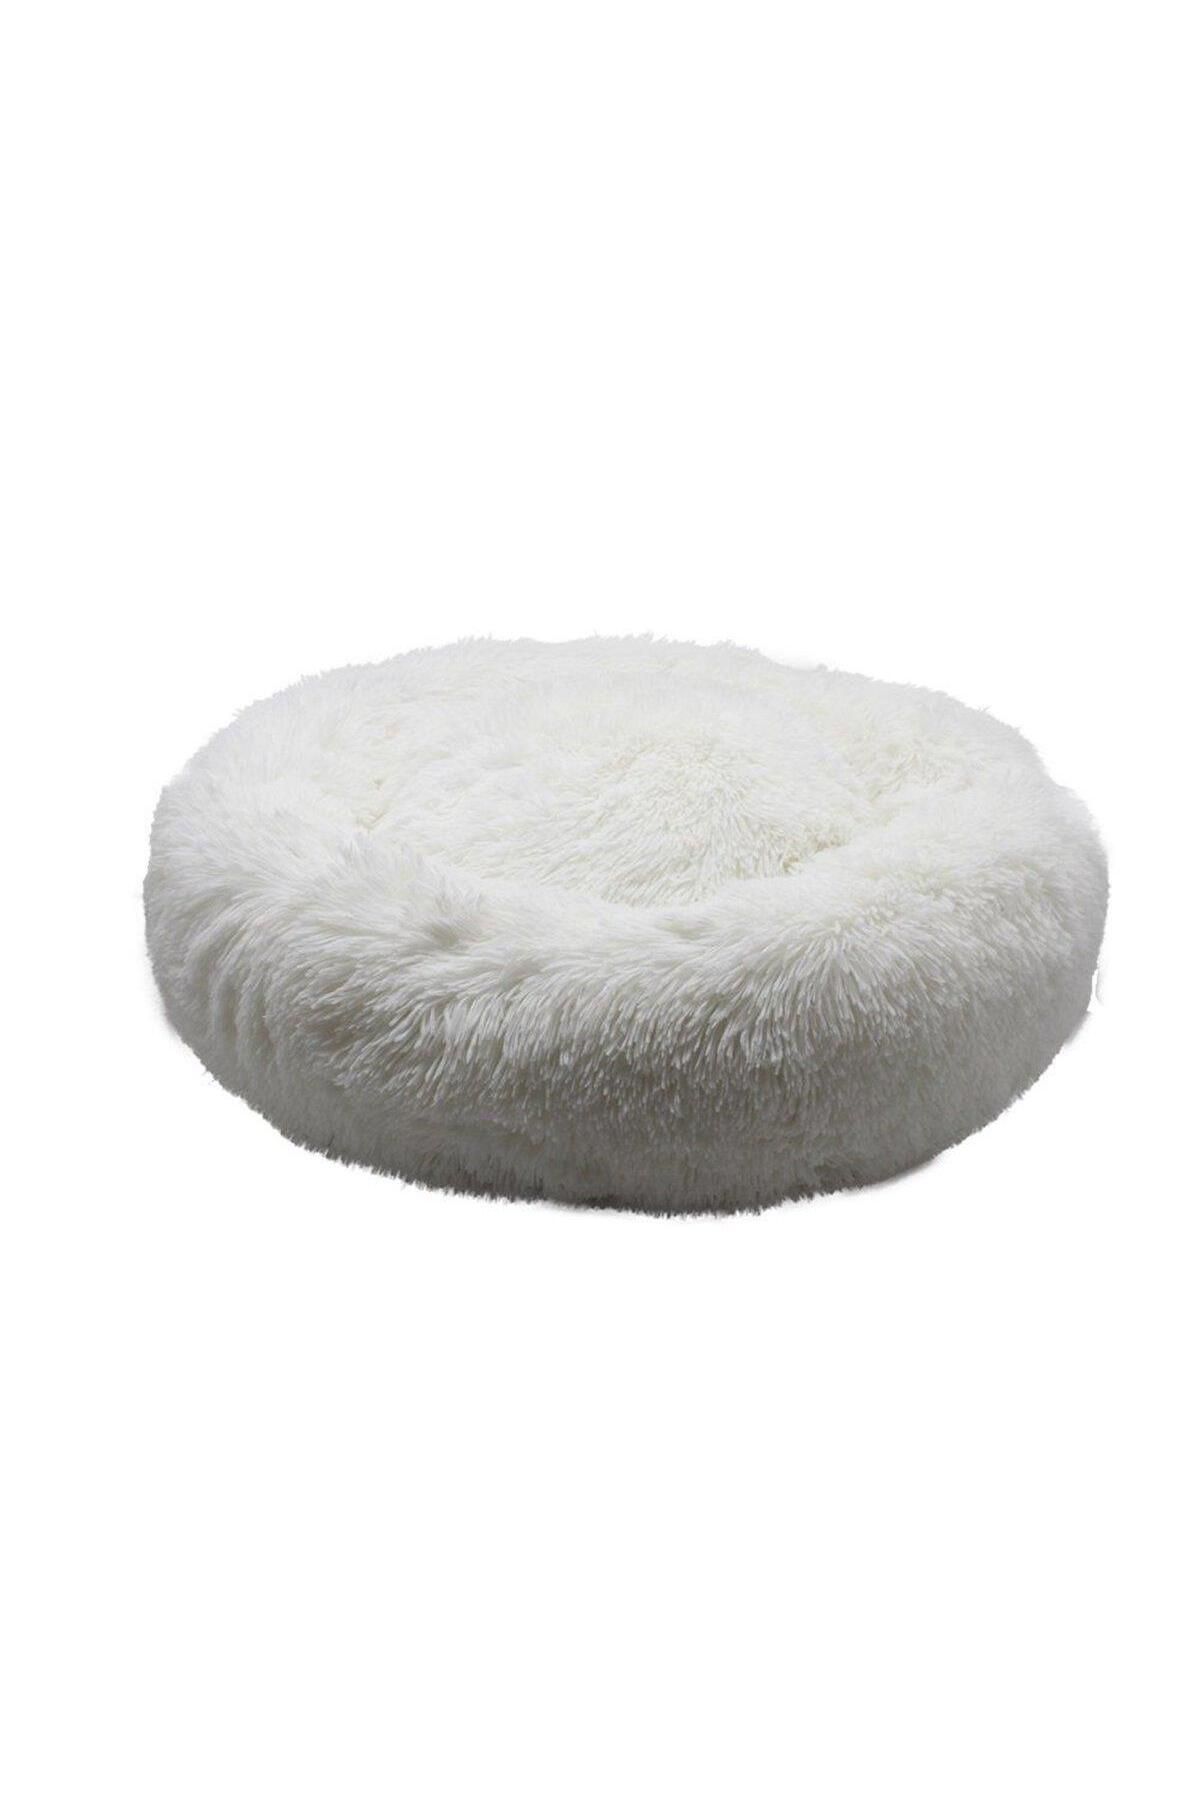 Zampa Ponchick Kedi Köpek Yatağı 50 cm Beyaz